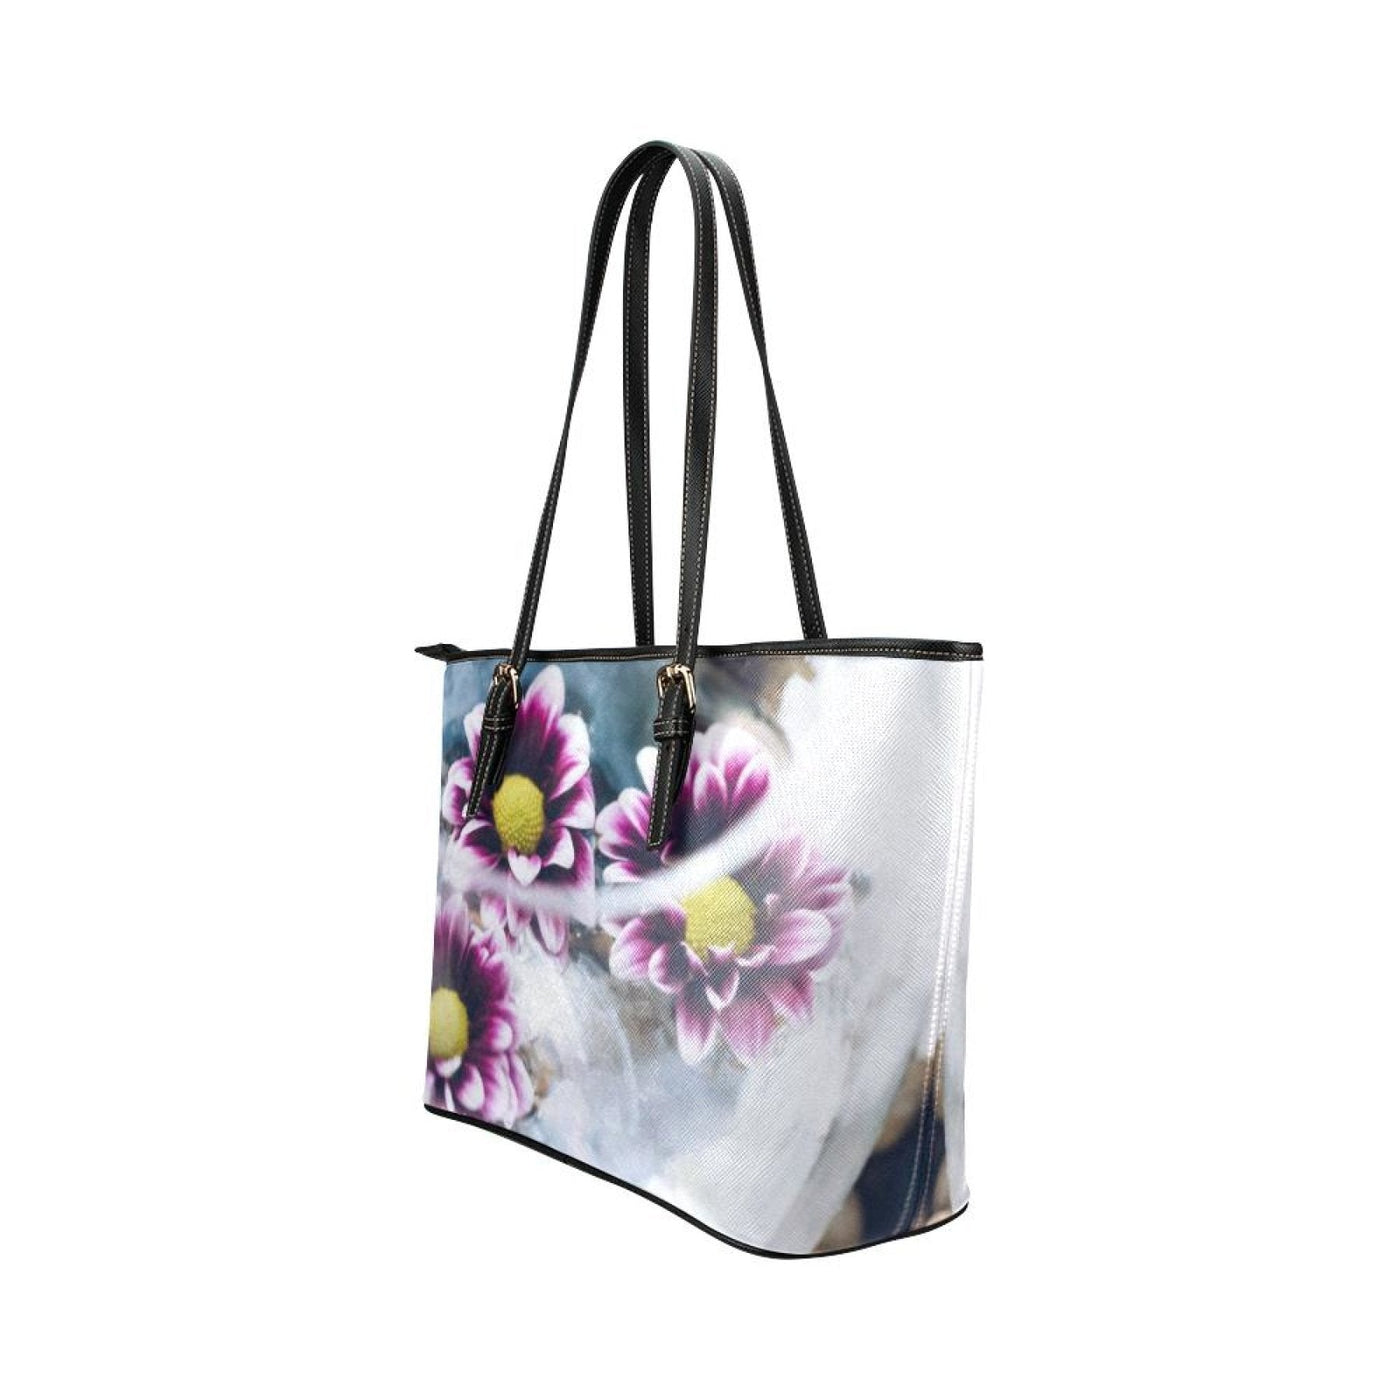 Large Leather Tote Shoulder Bag - Purple Floral Illustration Bags